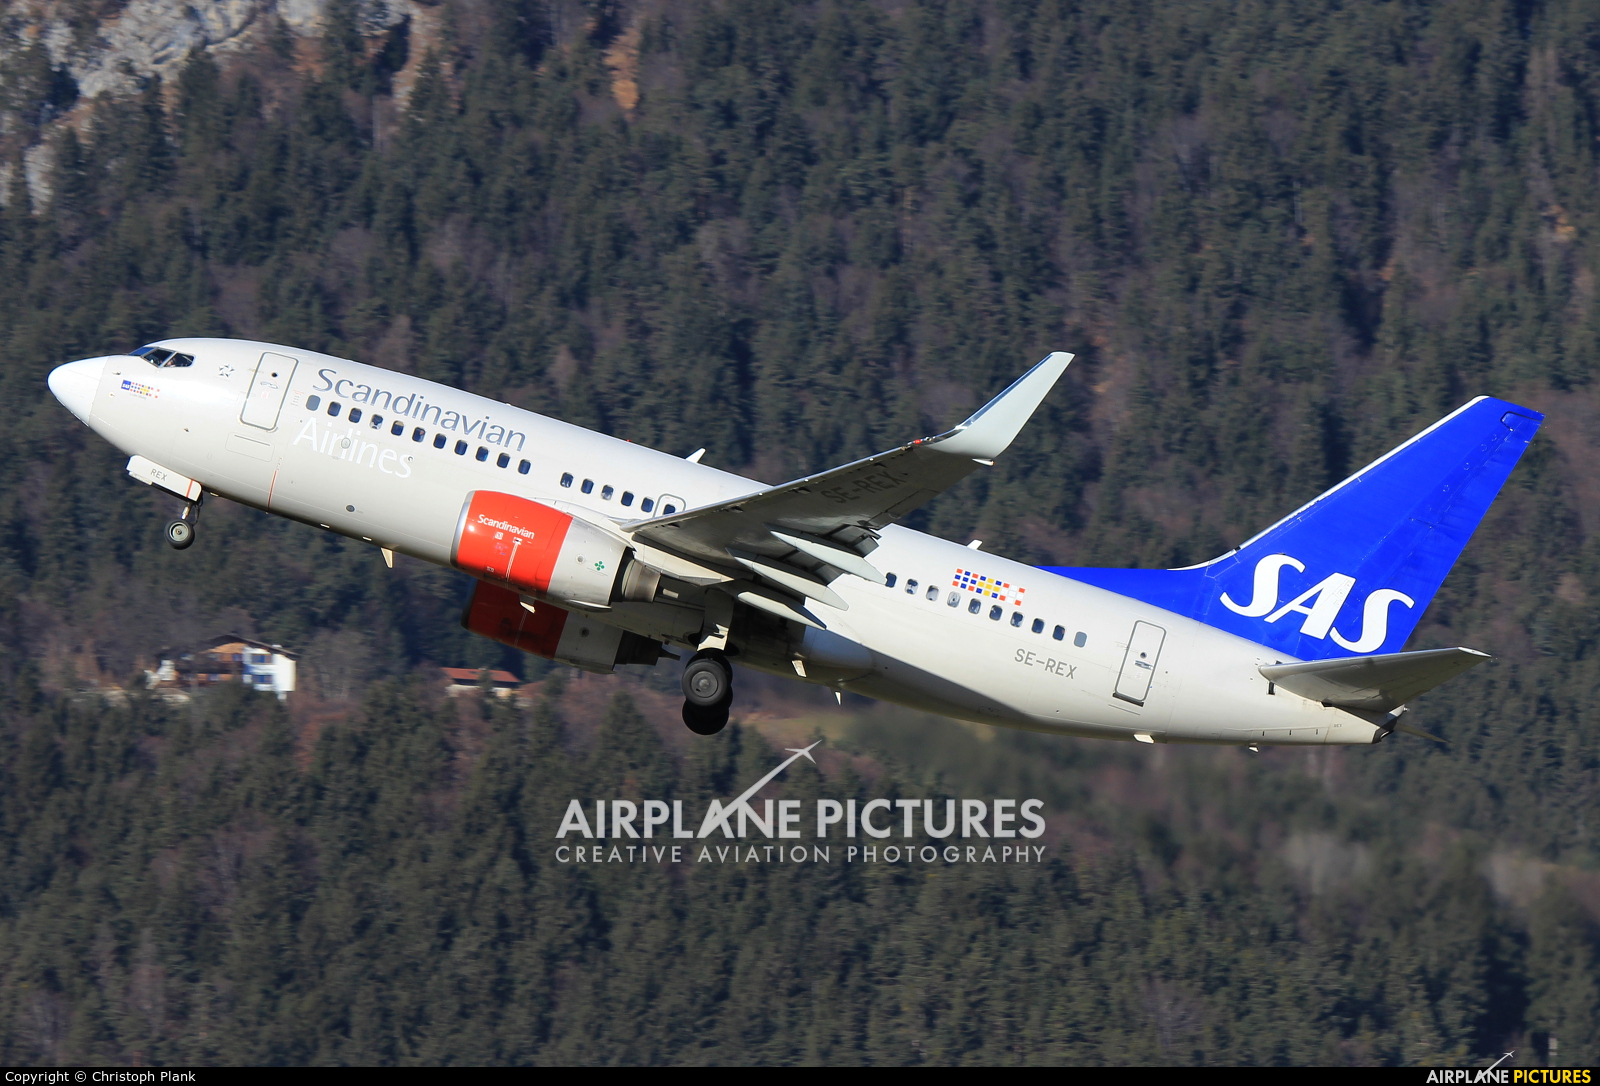 SAS - Scandinavian Airlines SE-REX aircraft at Innsbruck